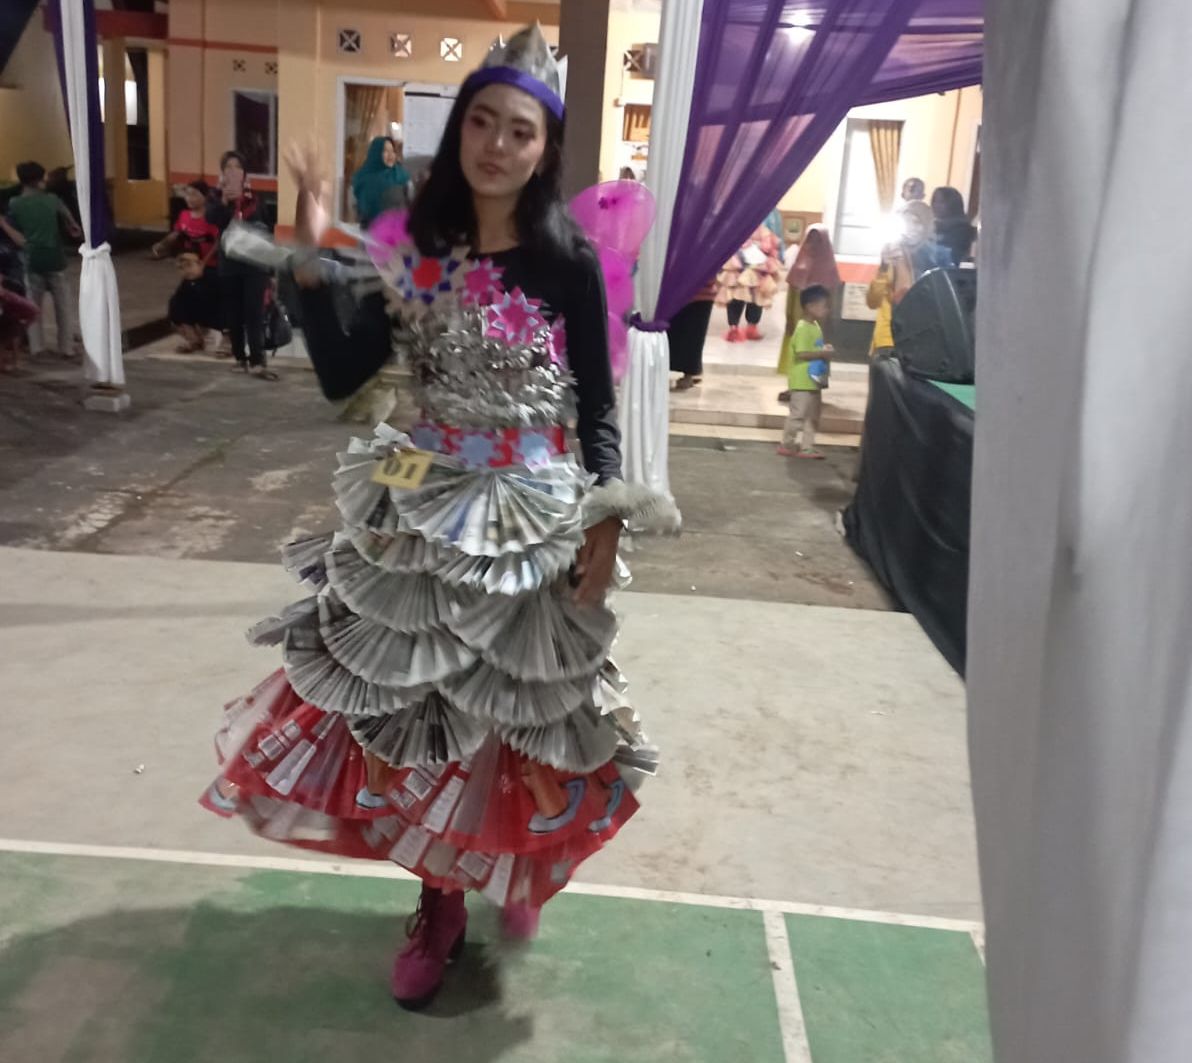 Resi, salasahiji patandang dina Lomba Fashionshow Pemanfaatan Limbah di Desa Ciparigi, Kecamatan Sukadana Kabupaten Ciamis,  kabiruyungan jadi juara ka-2.